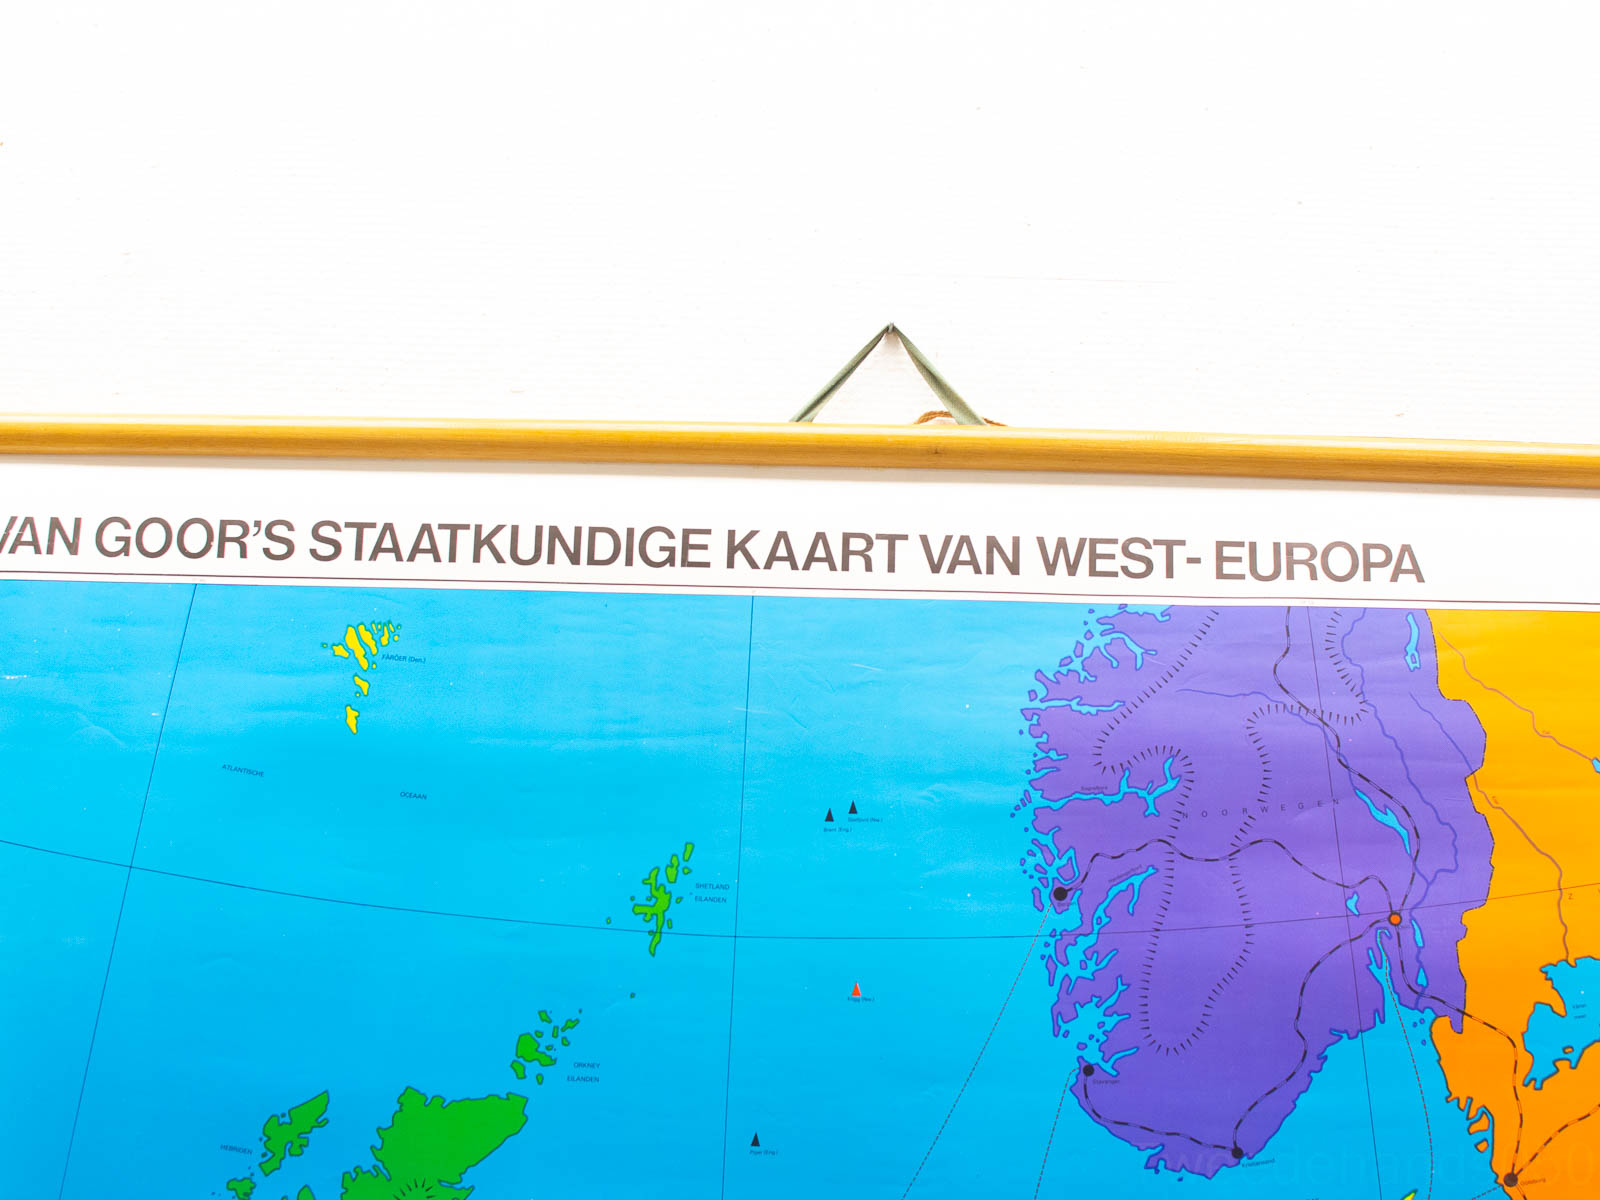 schoolplaat van Goor"s staatkundige kaart van west-europa dubbelzijdig 28133